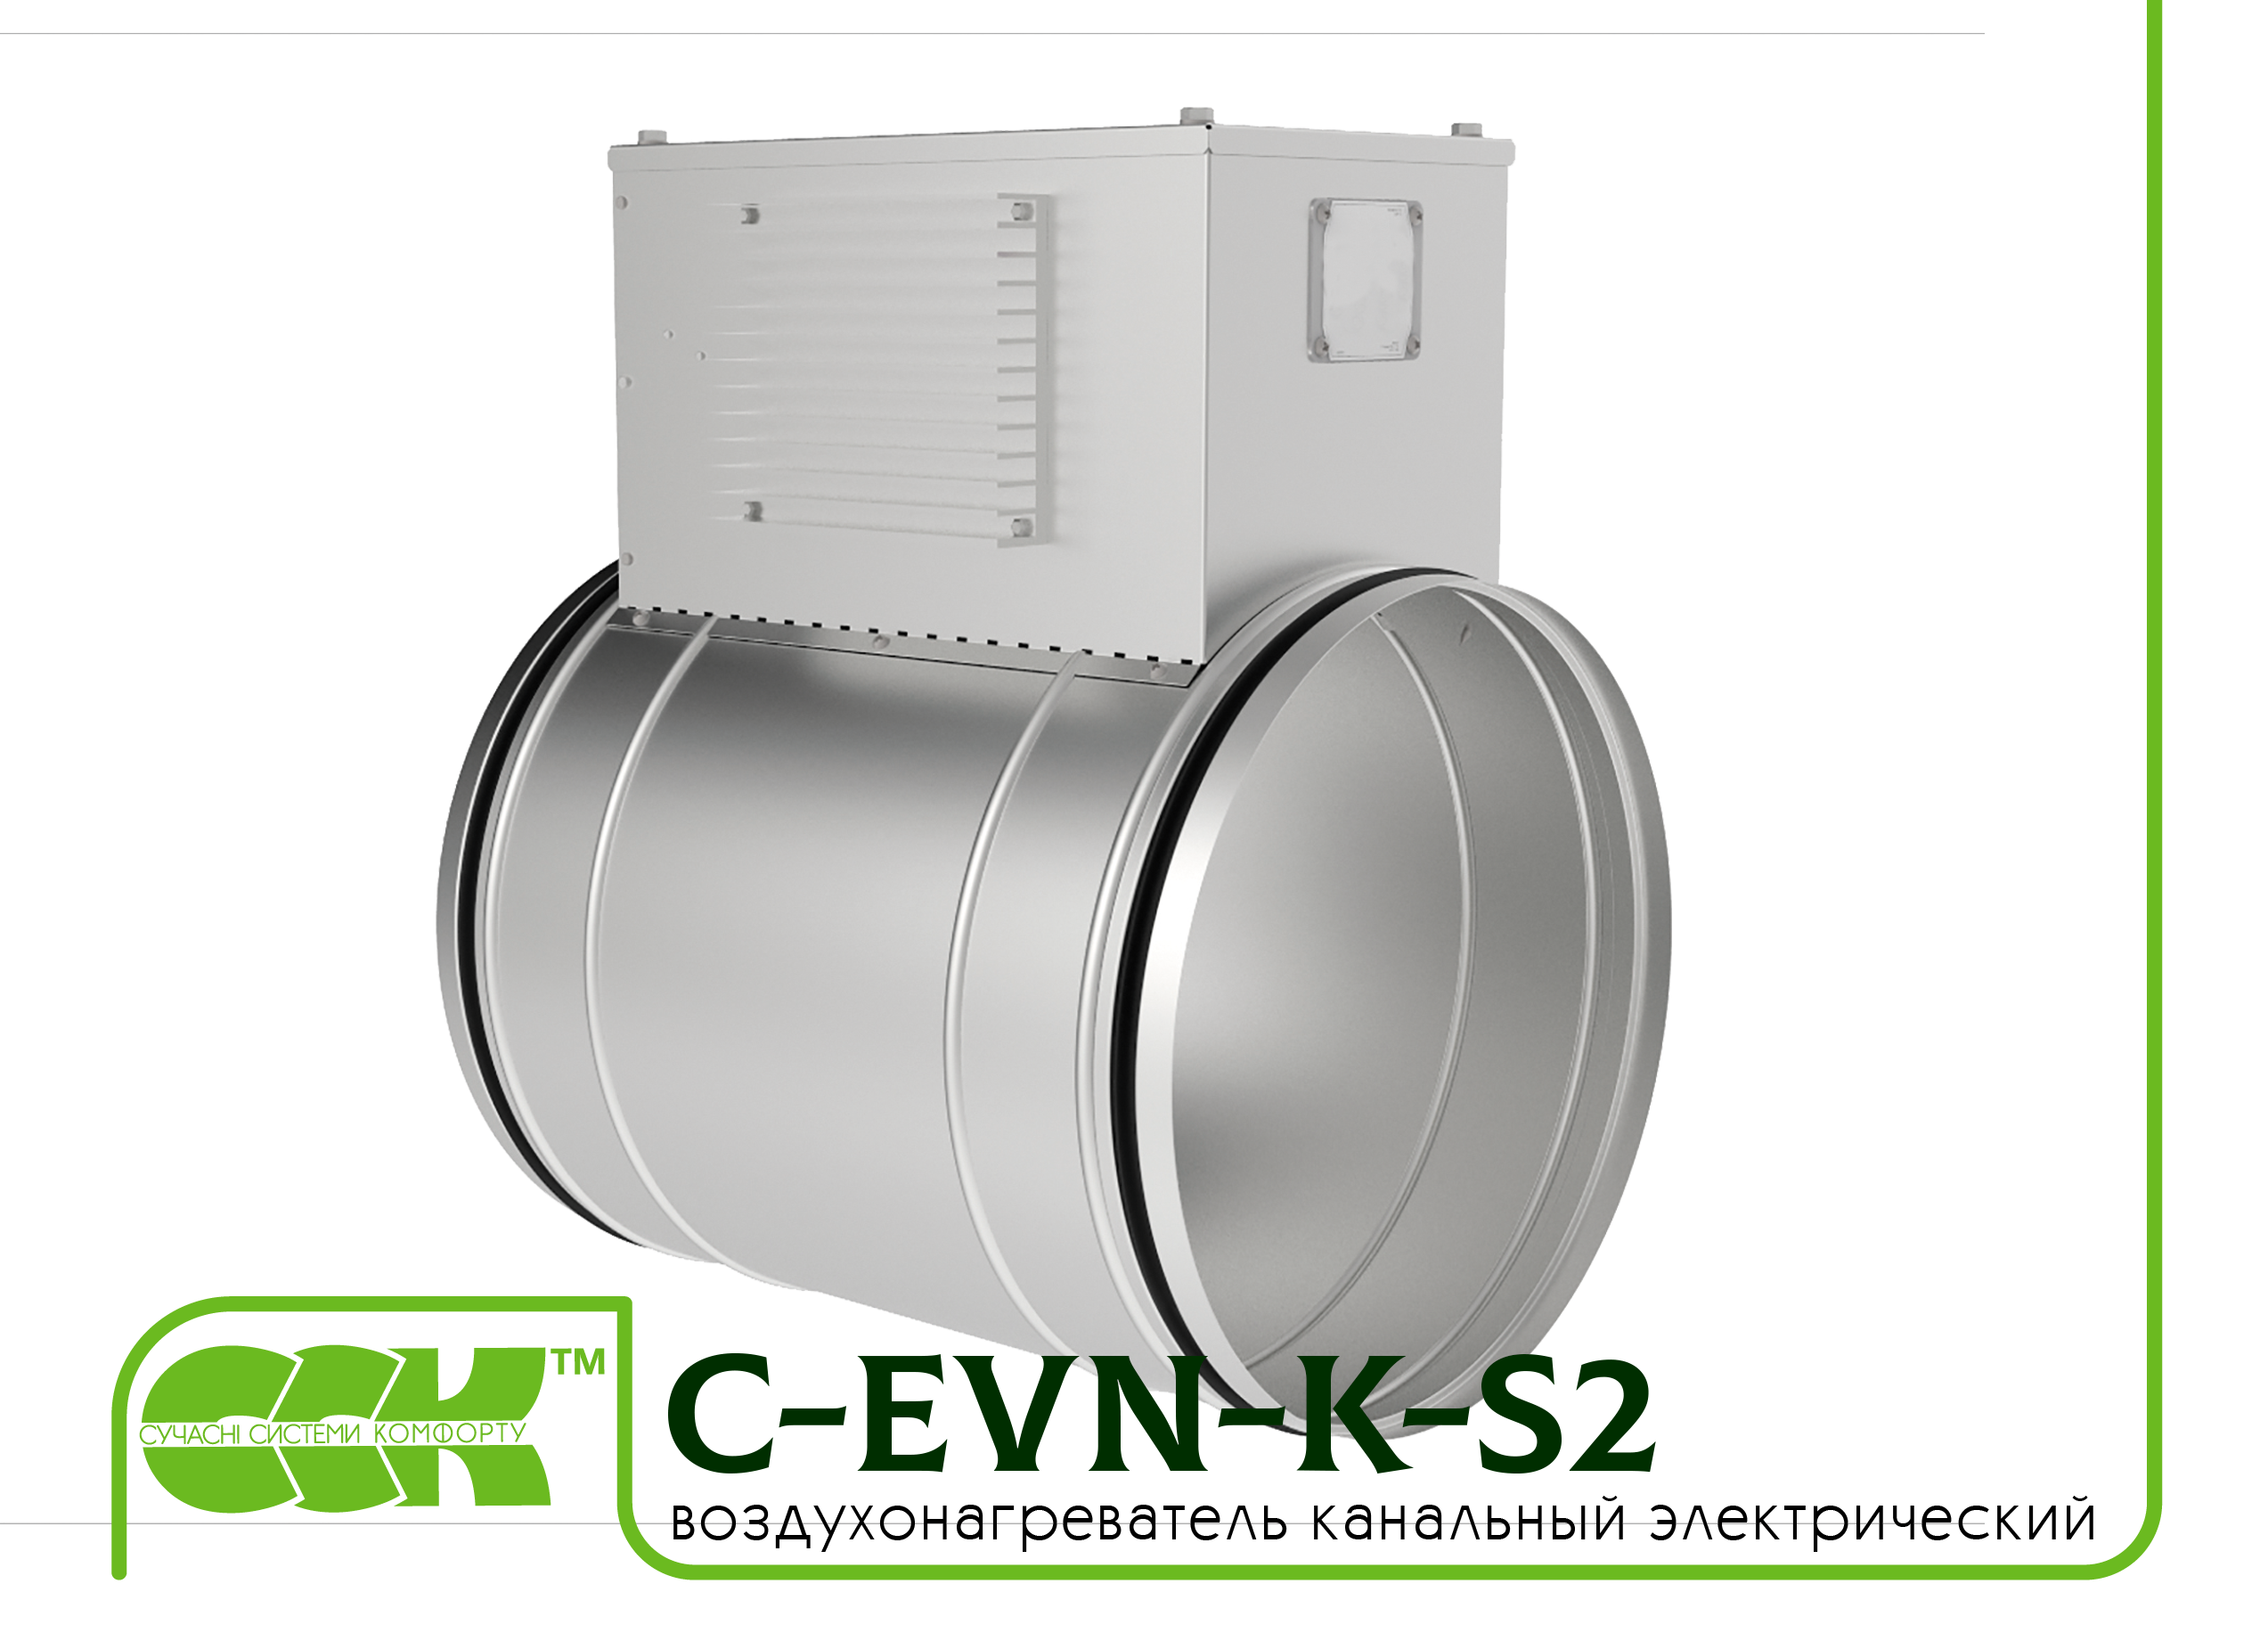 Воздухонагреватель канальный электрический для круглых каналов C-EVN-K-S2-100-1,2